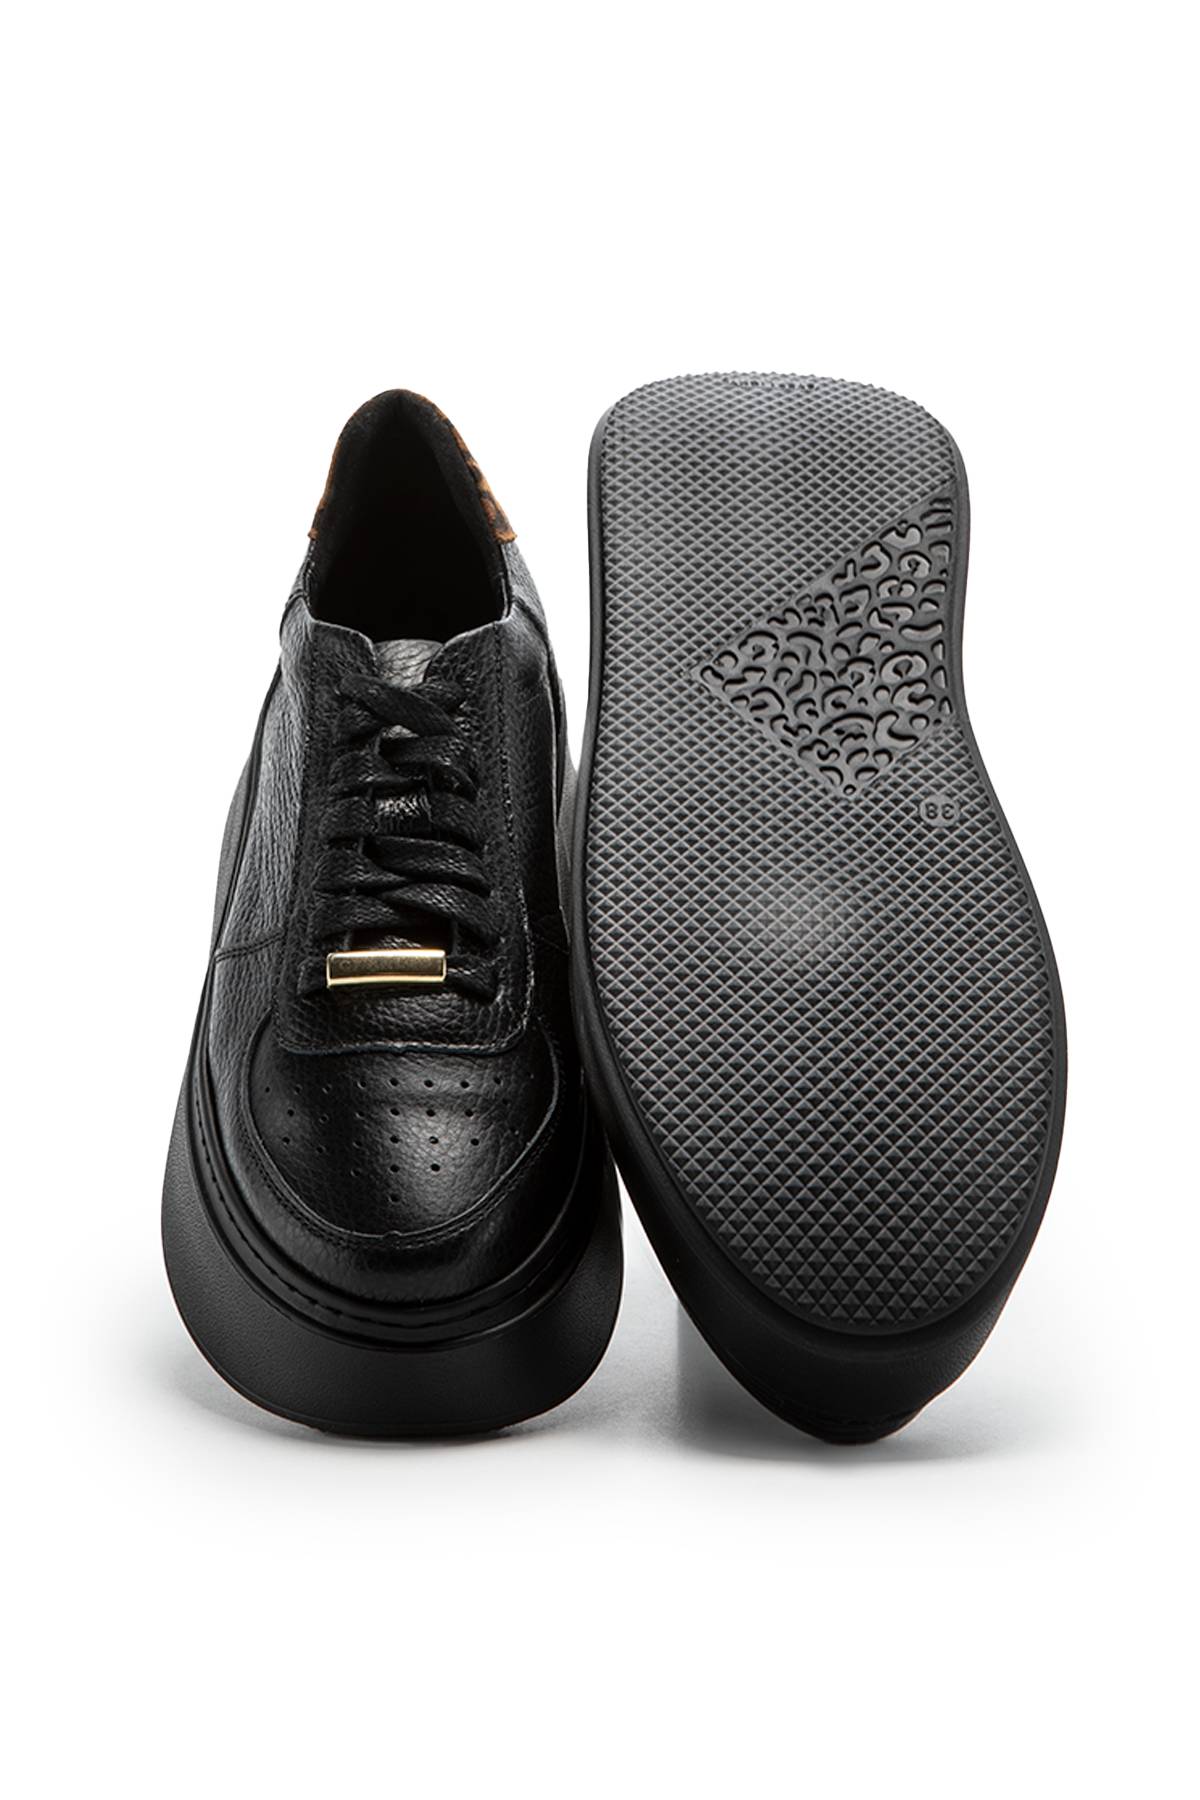 #00000  Charles Footwear slippers, sneakers Zana sneaker Black - Animal print - charlesfootwear.com